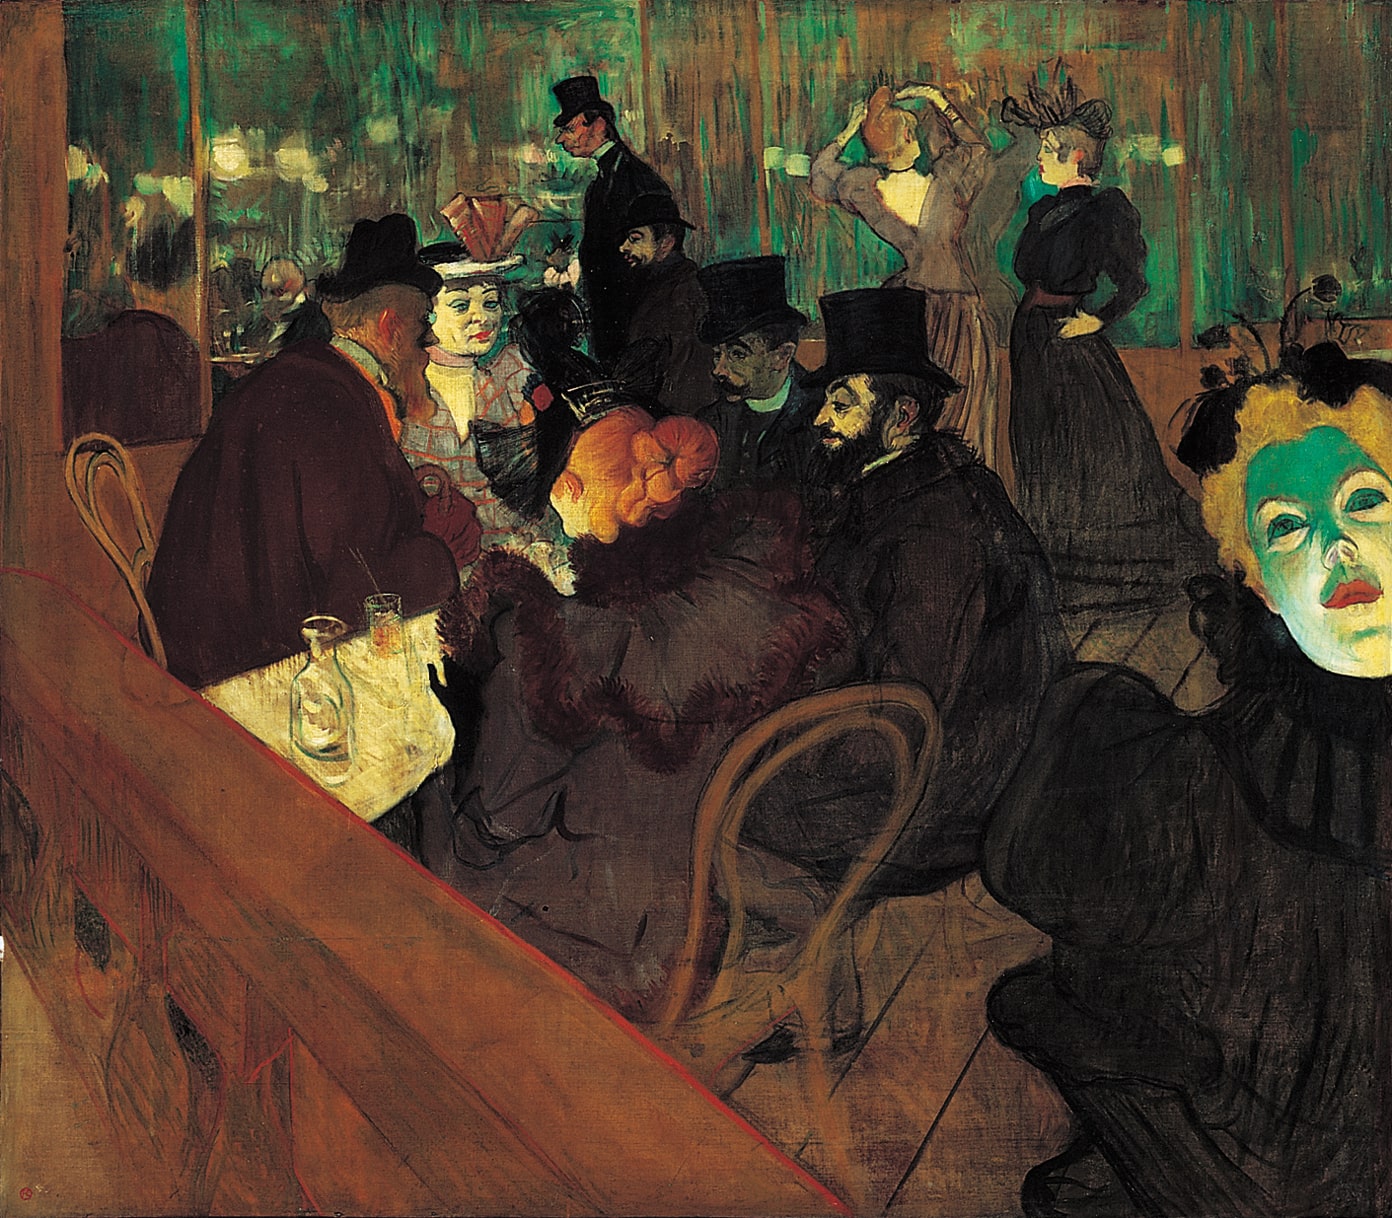 En el Moulin Rouge, del artista postimpresionista Henry de Toulouse-Lautrec. Hacia fines del siglo XIX, comenzaron a tener gran influencia en el arte europeo las imágenes provenientes de otros contextos culturales como las máscaras africanas y y la estampa japonesa.